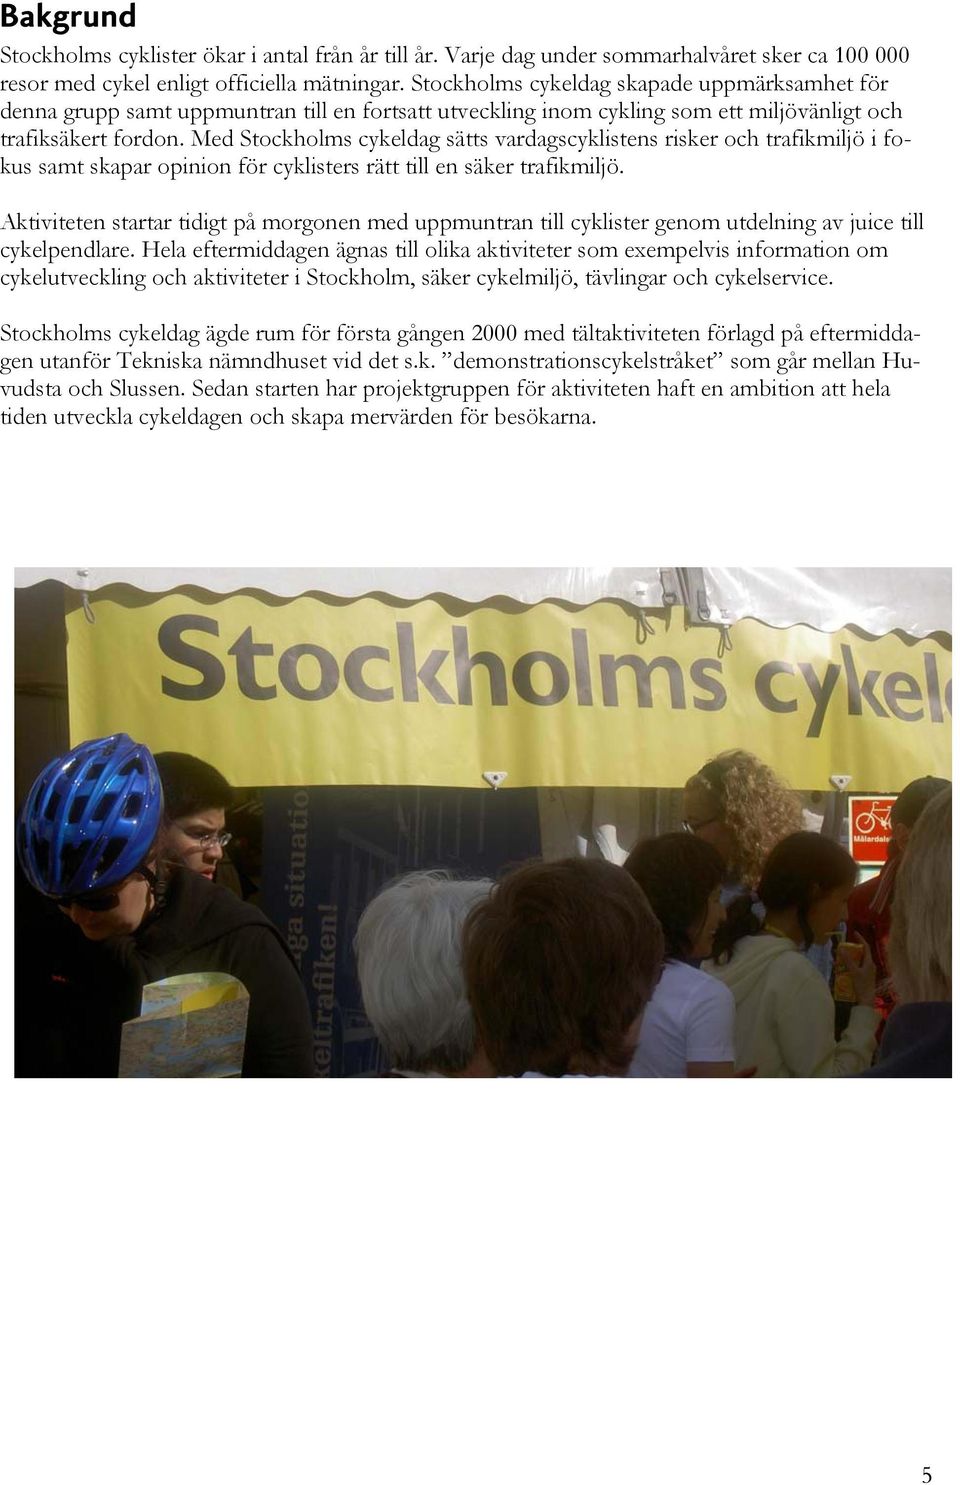 Med Stockholms cykeldag sätts vardagscyklistens risker och trafikmiljö i fokus samt skapar opinion för cyklisters rätt till en säker trafikmiljö.